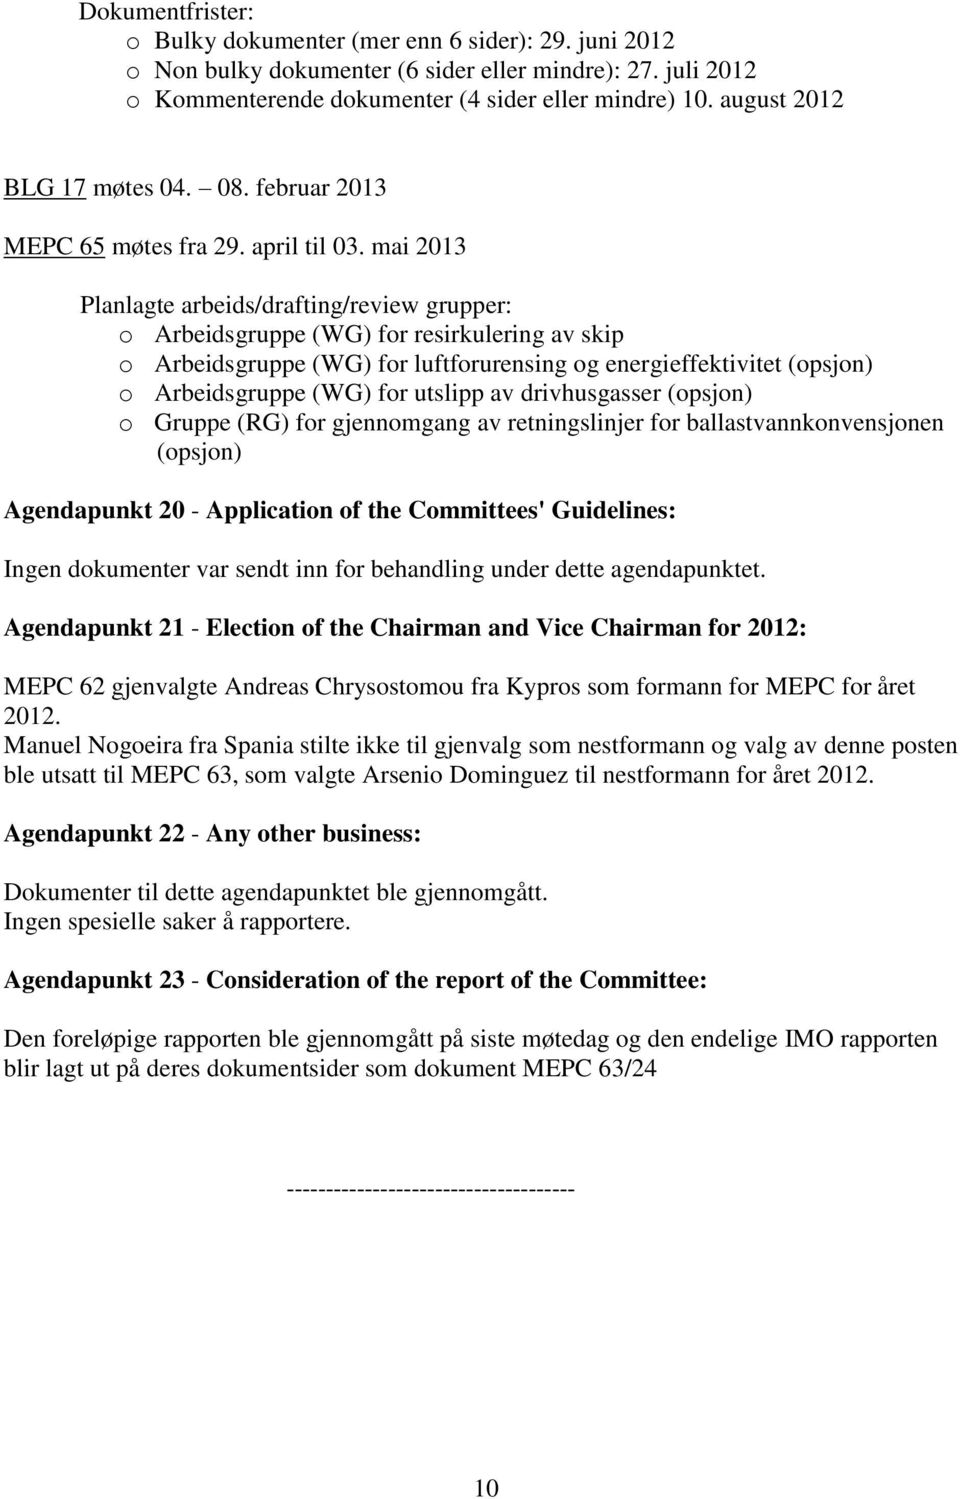 mai 2013 Planlagte arbeids/drafting/review grupper: o Arbeidsgruppe (WG) for resirkulering av skip o Arbeidsgruppe (WG) for luftforurensing og energieffektivitet (opsjon) o Arbeidsgruppe (WG) for